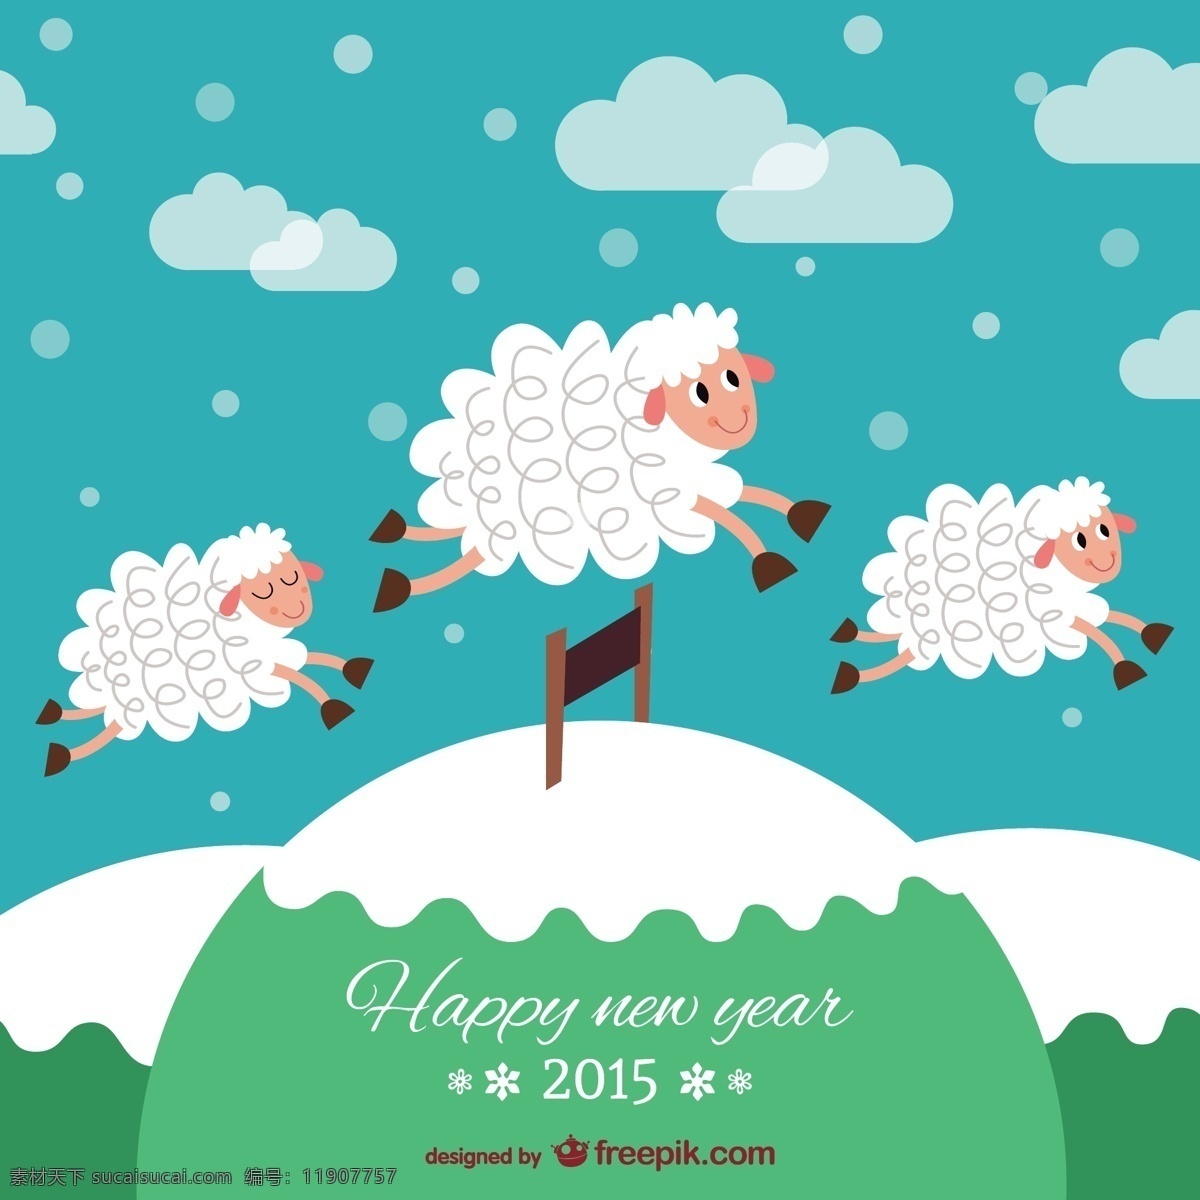 羊年卡 背景 卡片 新年快乐 新年2015 快乐 羊 新 年 新的一年 青色 天蓝色